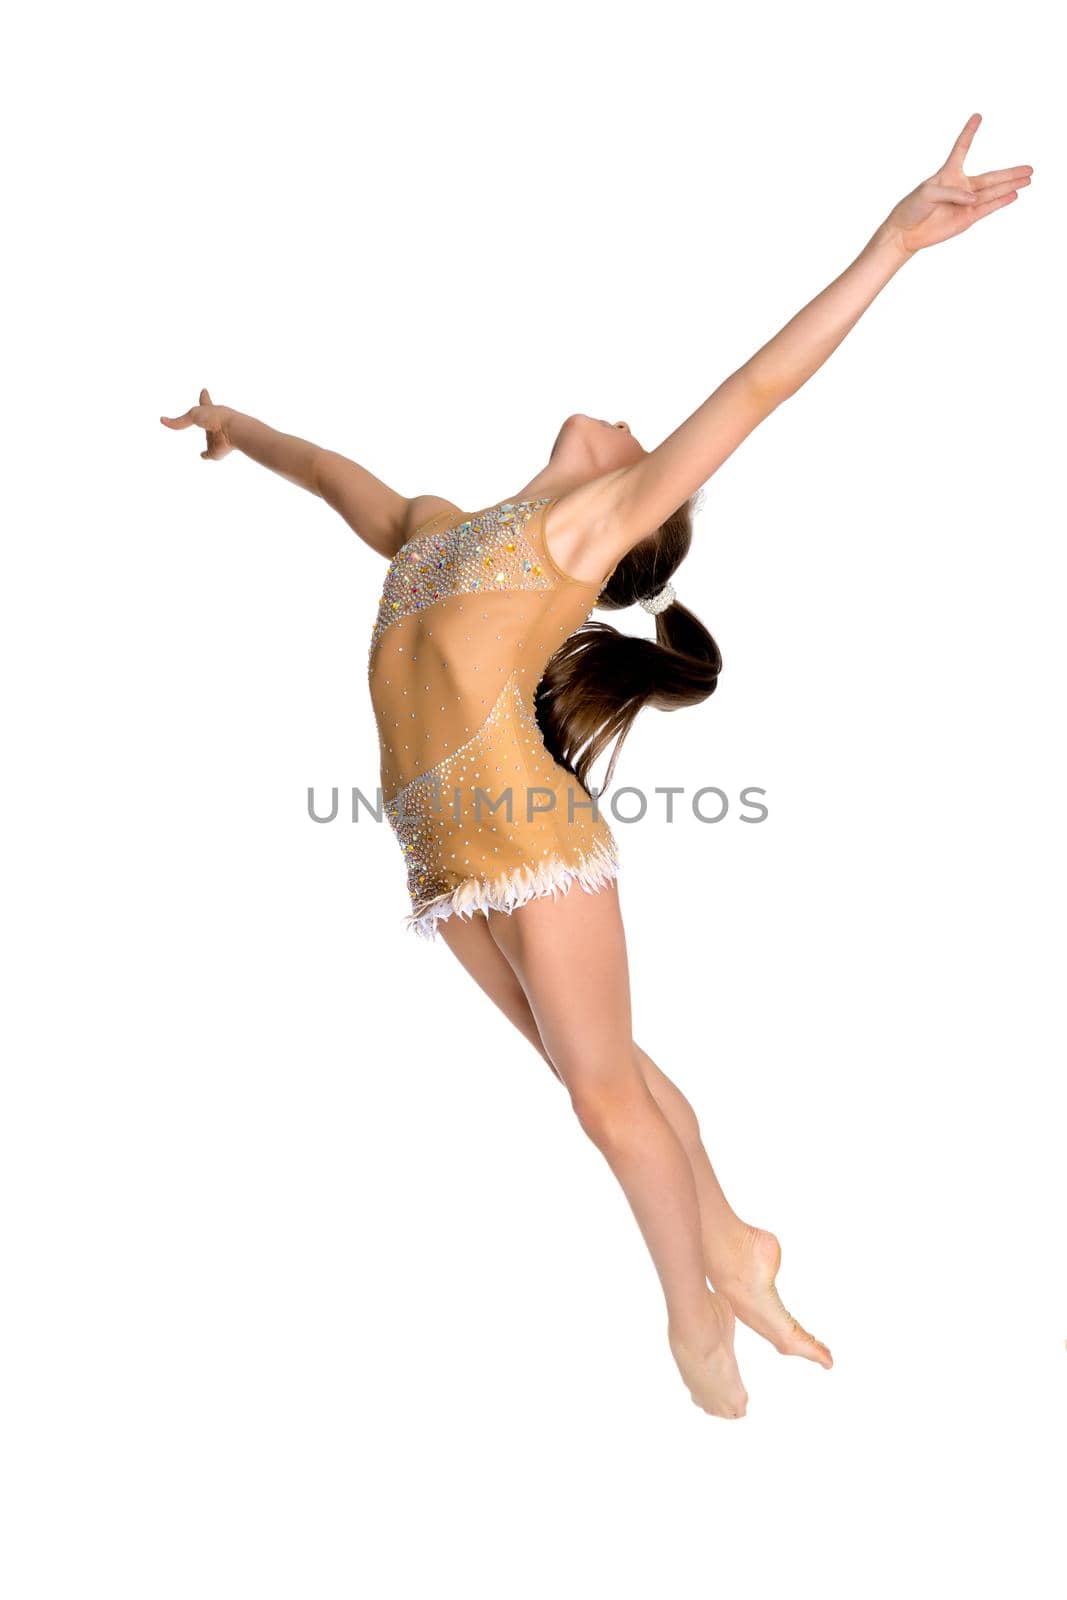 The girl gymnast performs a jump. by kolesnikov_studio